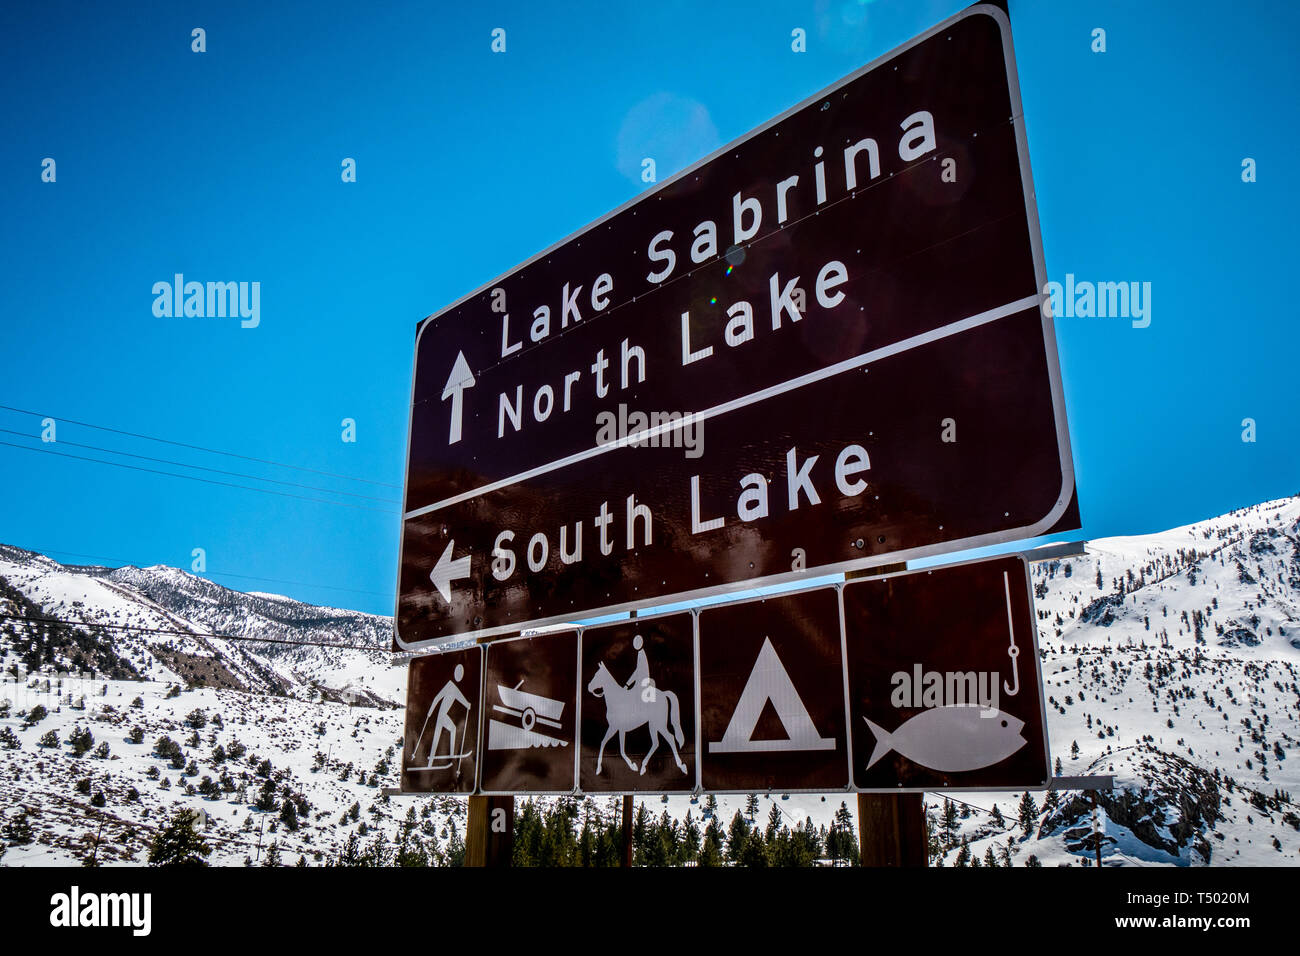 Panneaux de direction au lac Sabrina à Bishop - Évêque, USA - Le 29 mars 2019 Banque D'Images